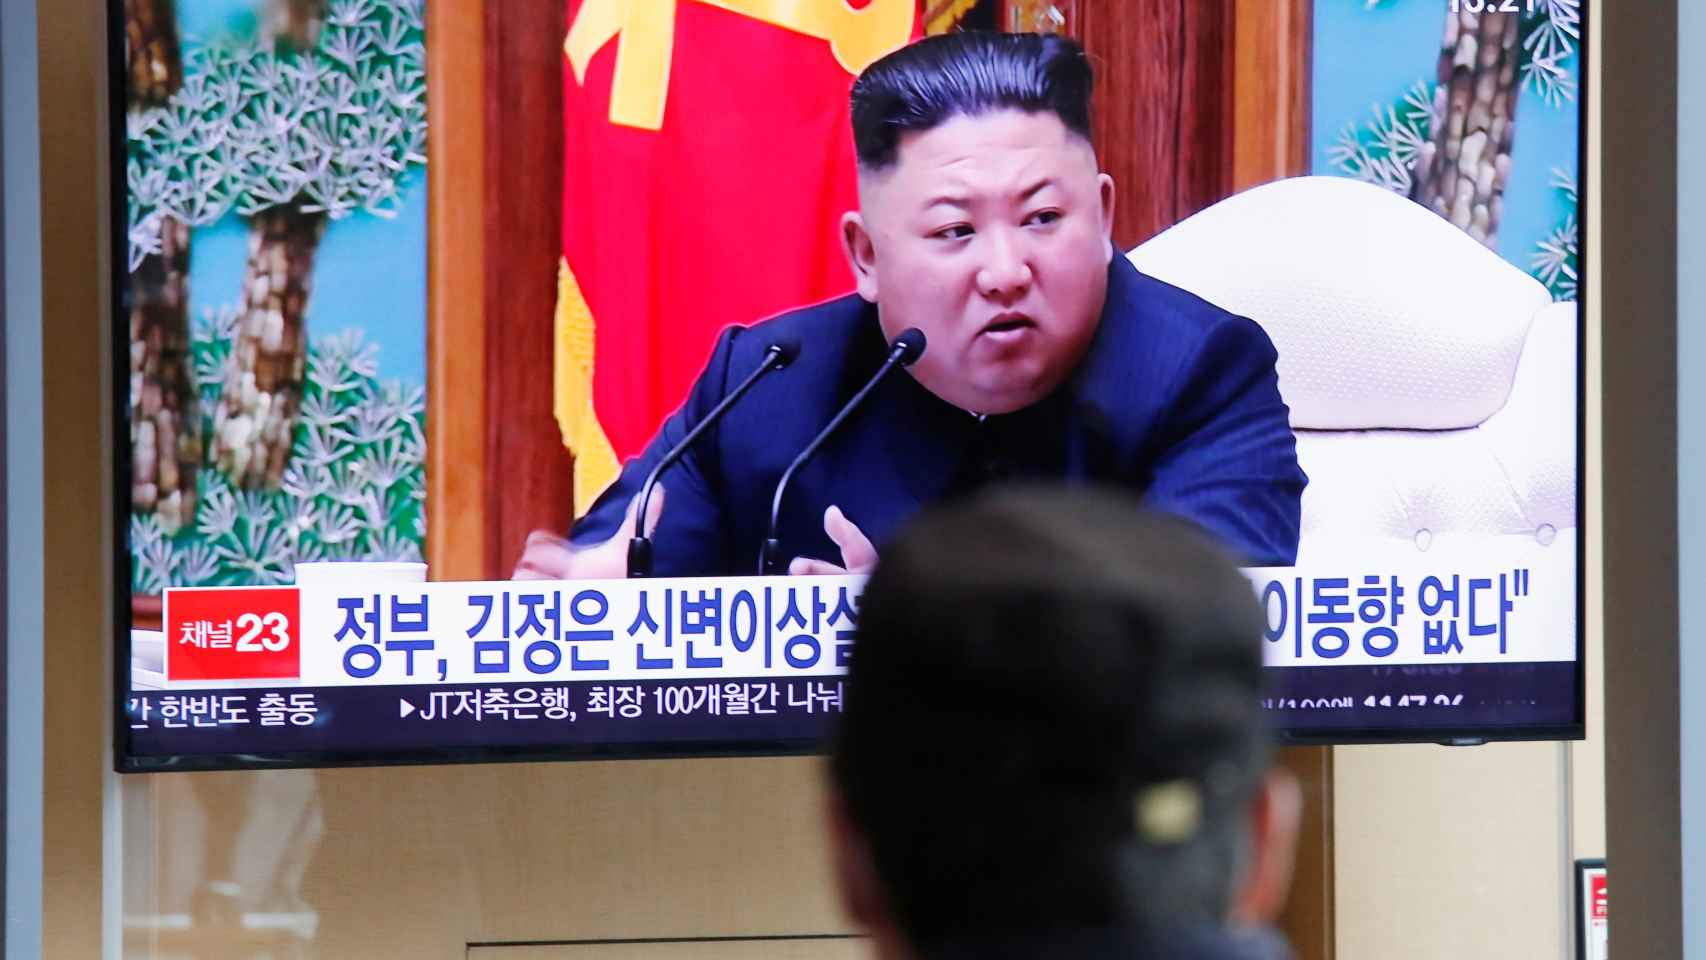 El líder norcoreano, en una aparición televisiva.